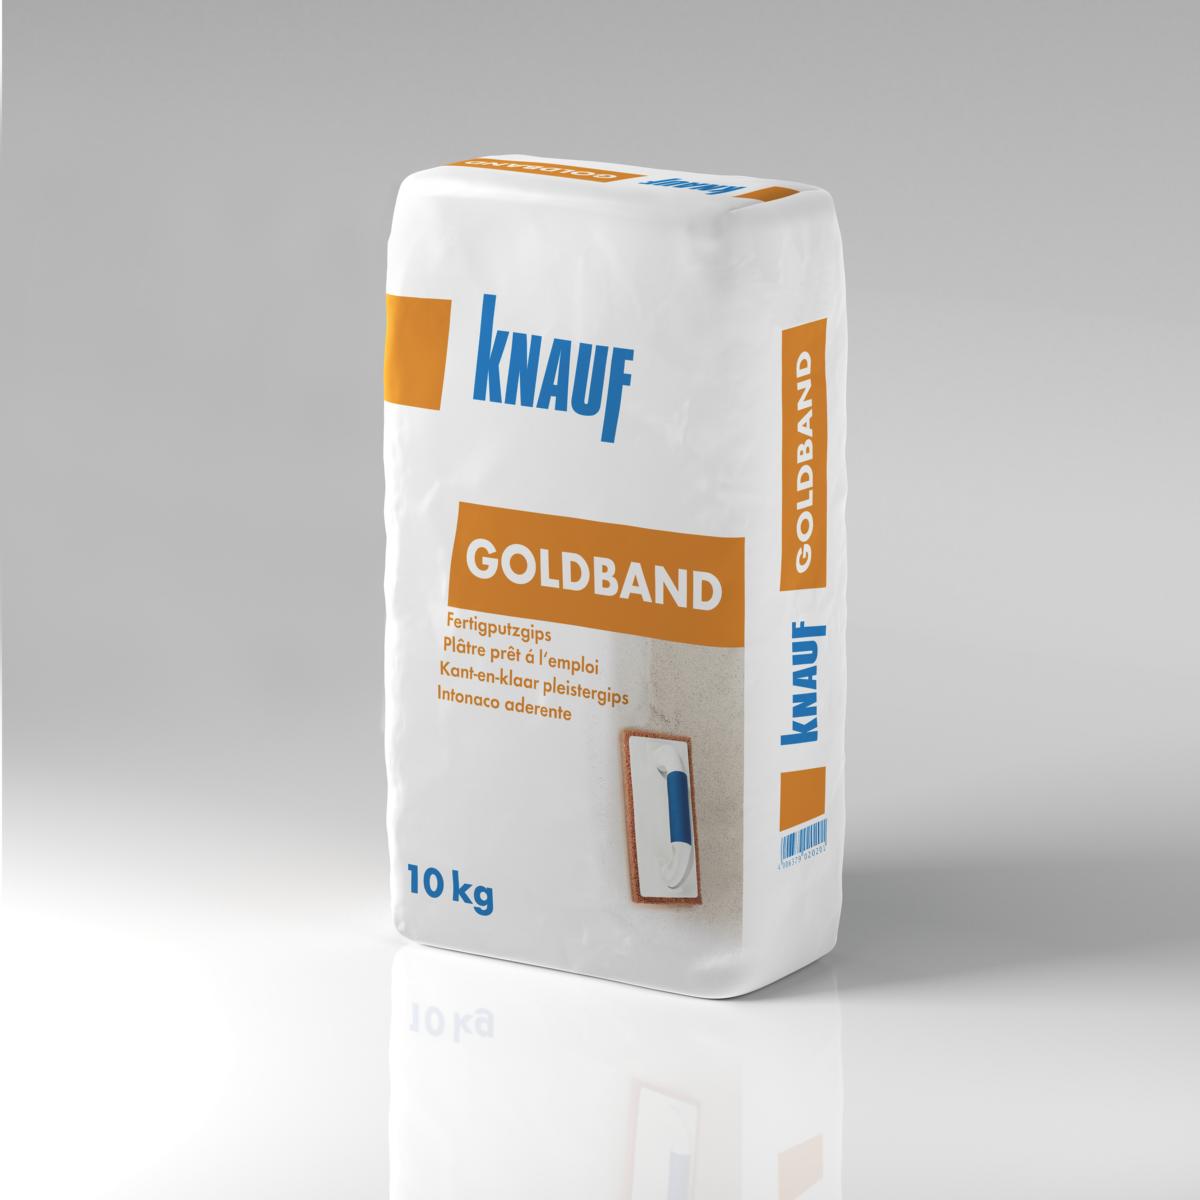 Knauf Goldband-Fertigputzgips, 10 kg